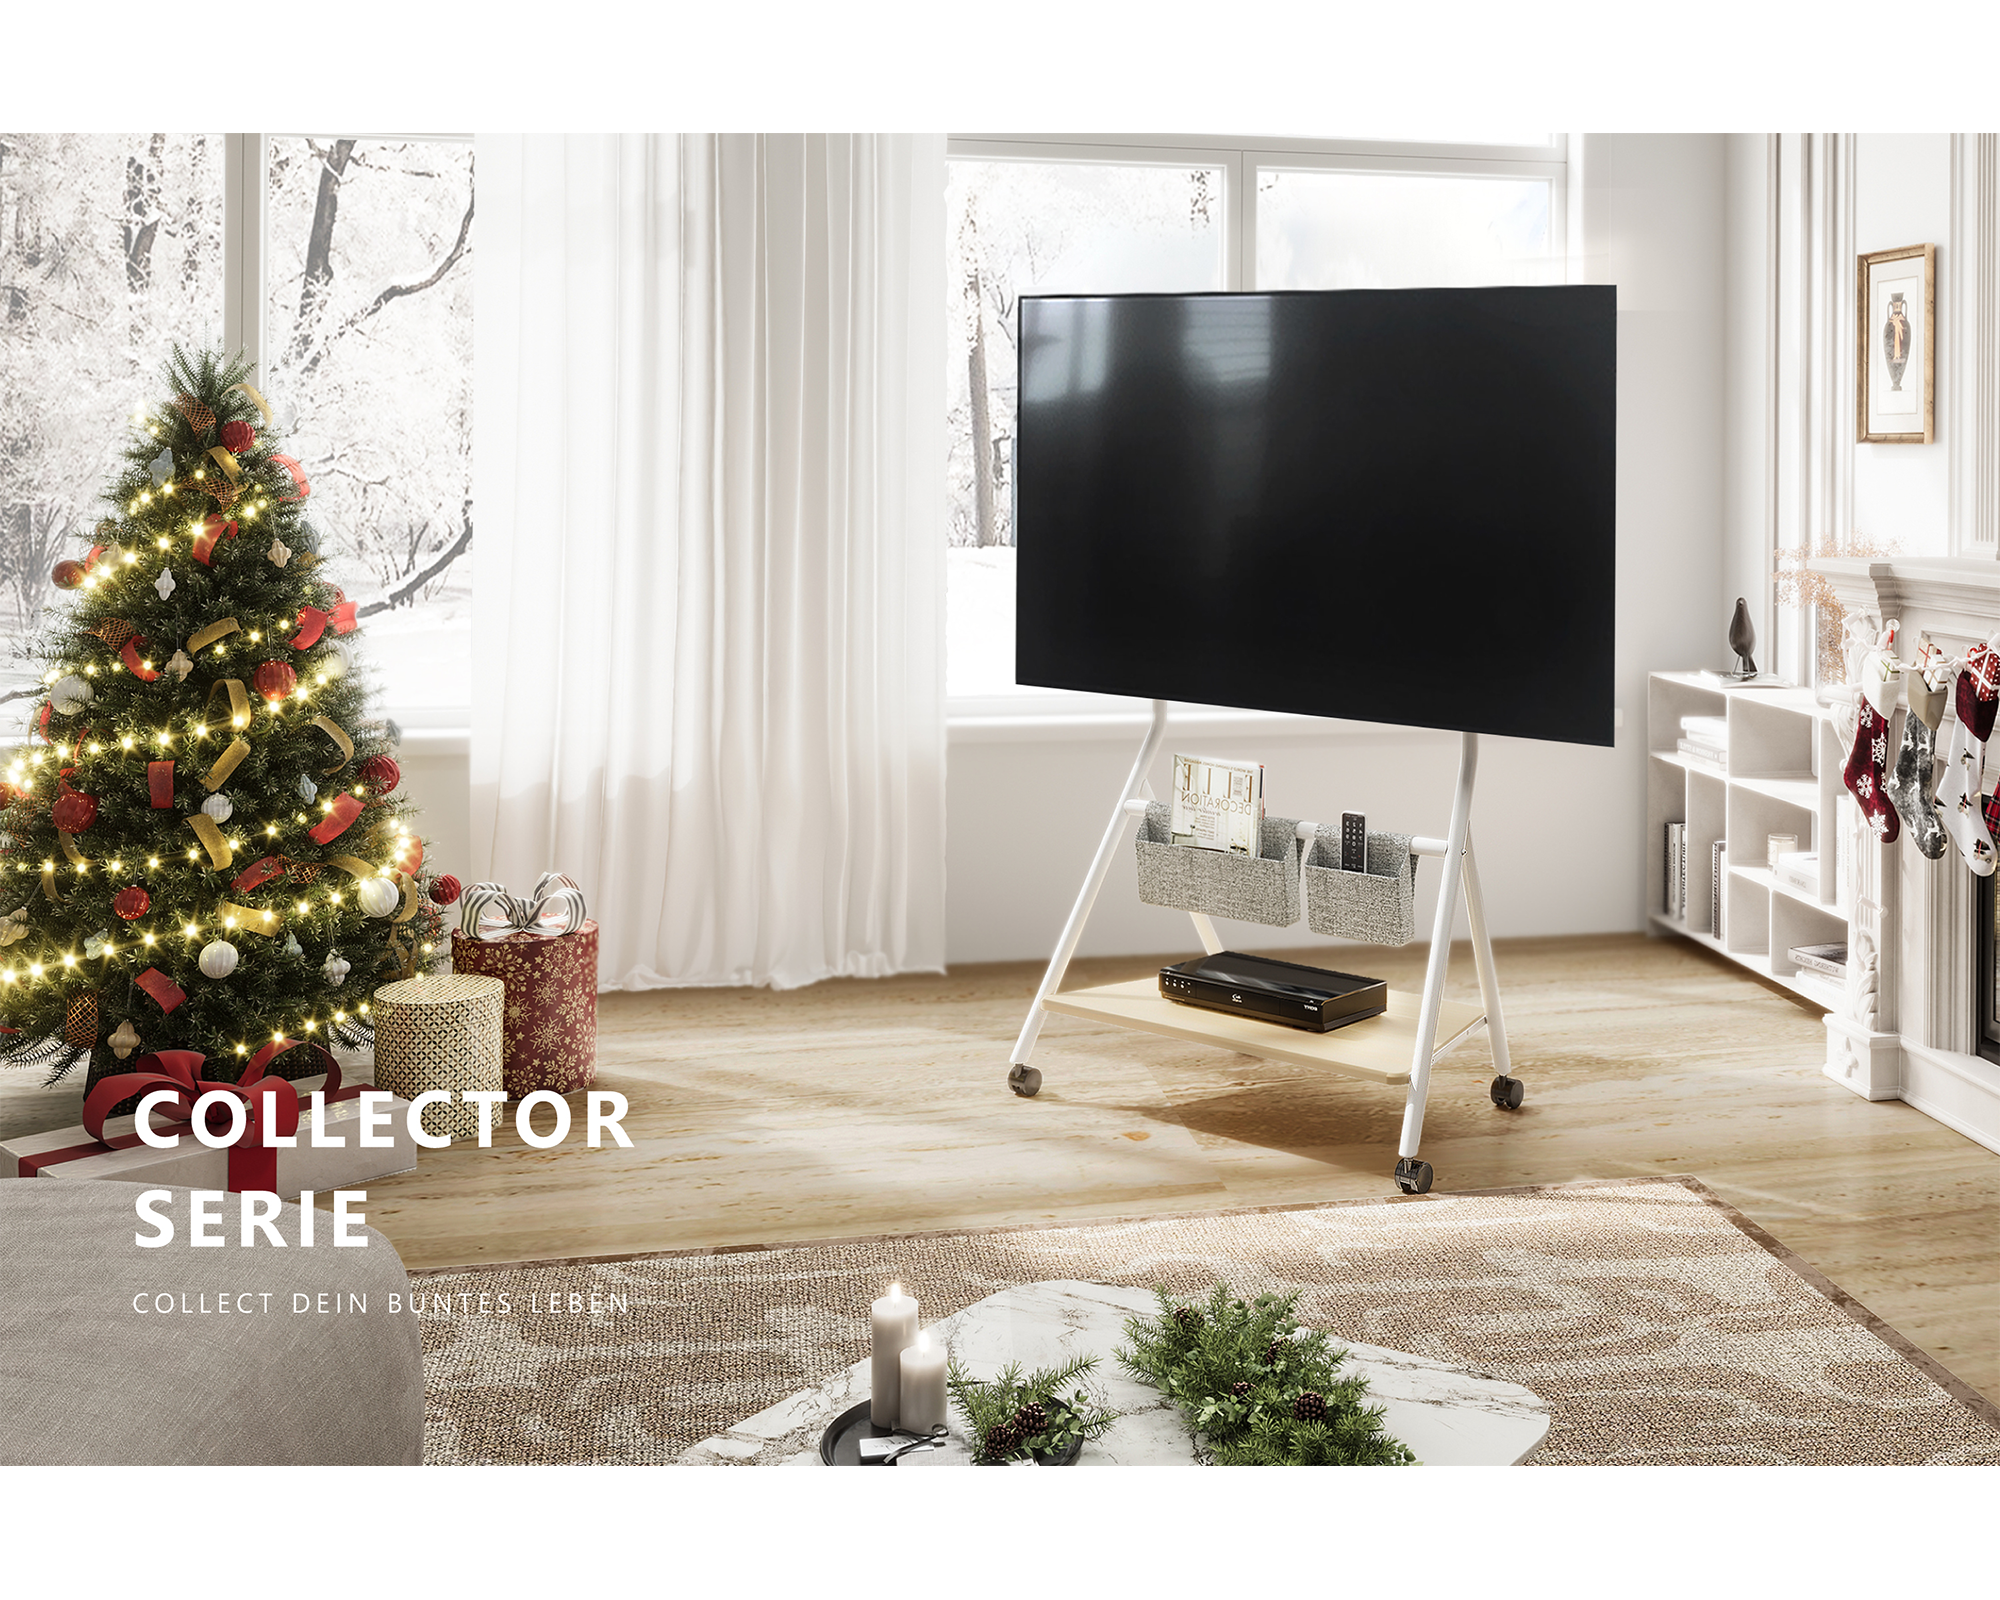 Vloer TV-standaard Collector-serie voor 55-78 inch